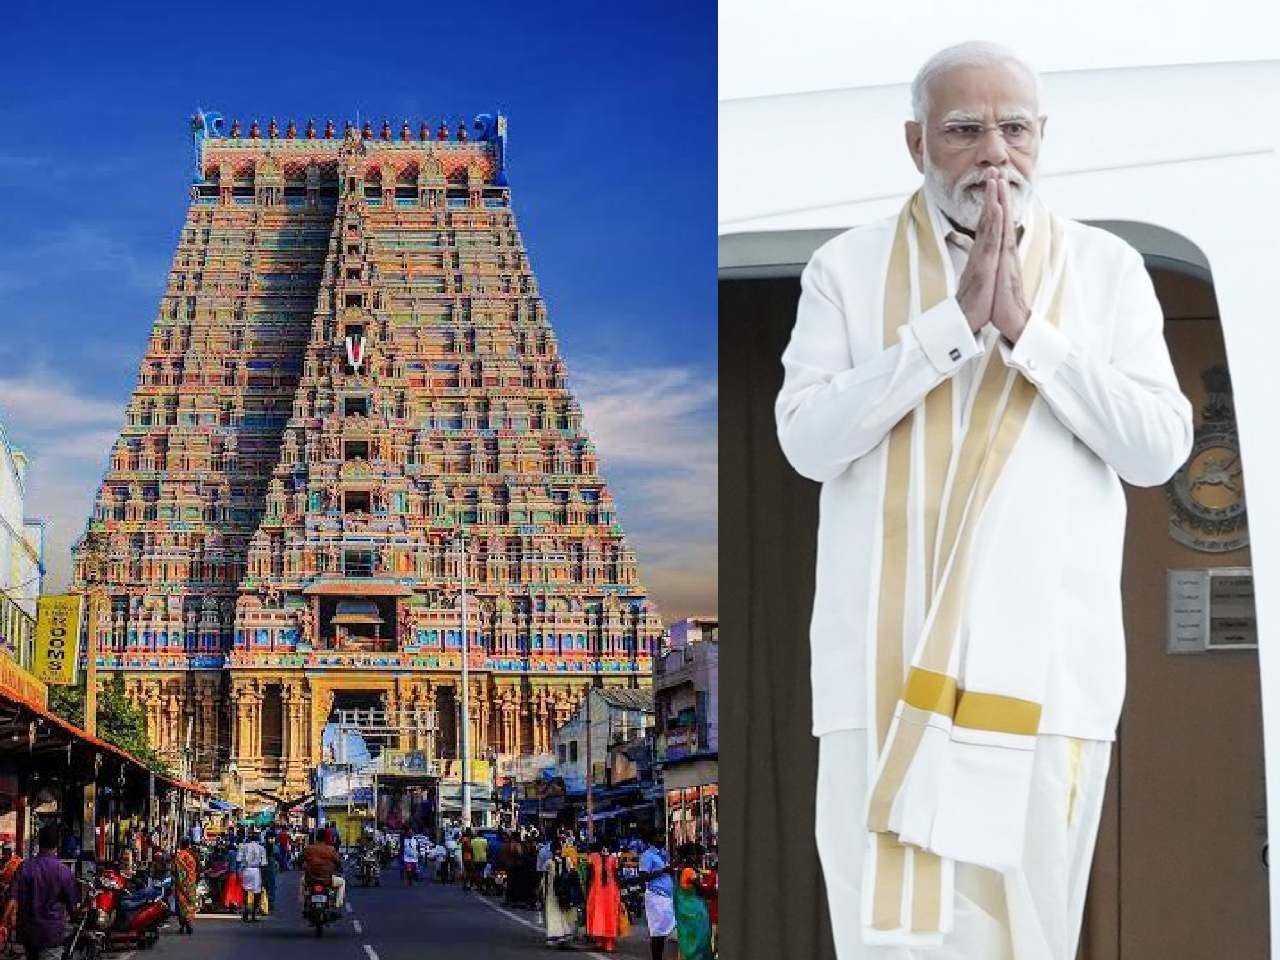 PM Modi's visit: No public darshan at Srirangam temple in Trichy on Jan 20  | Tamil Nadu News - News9live